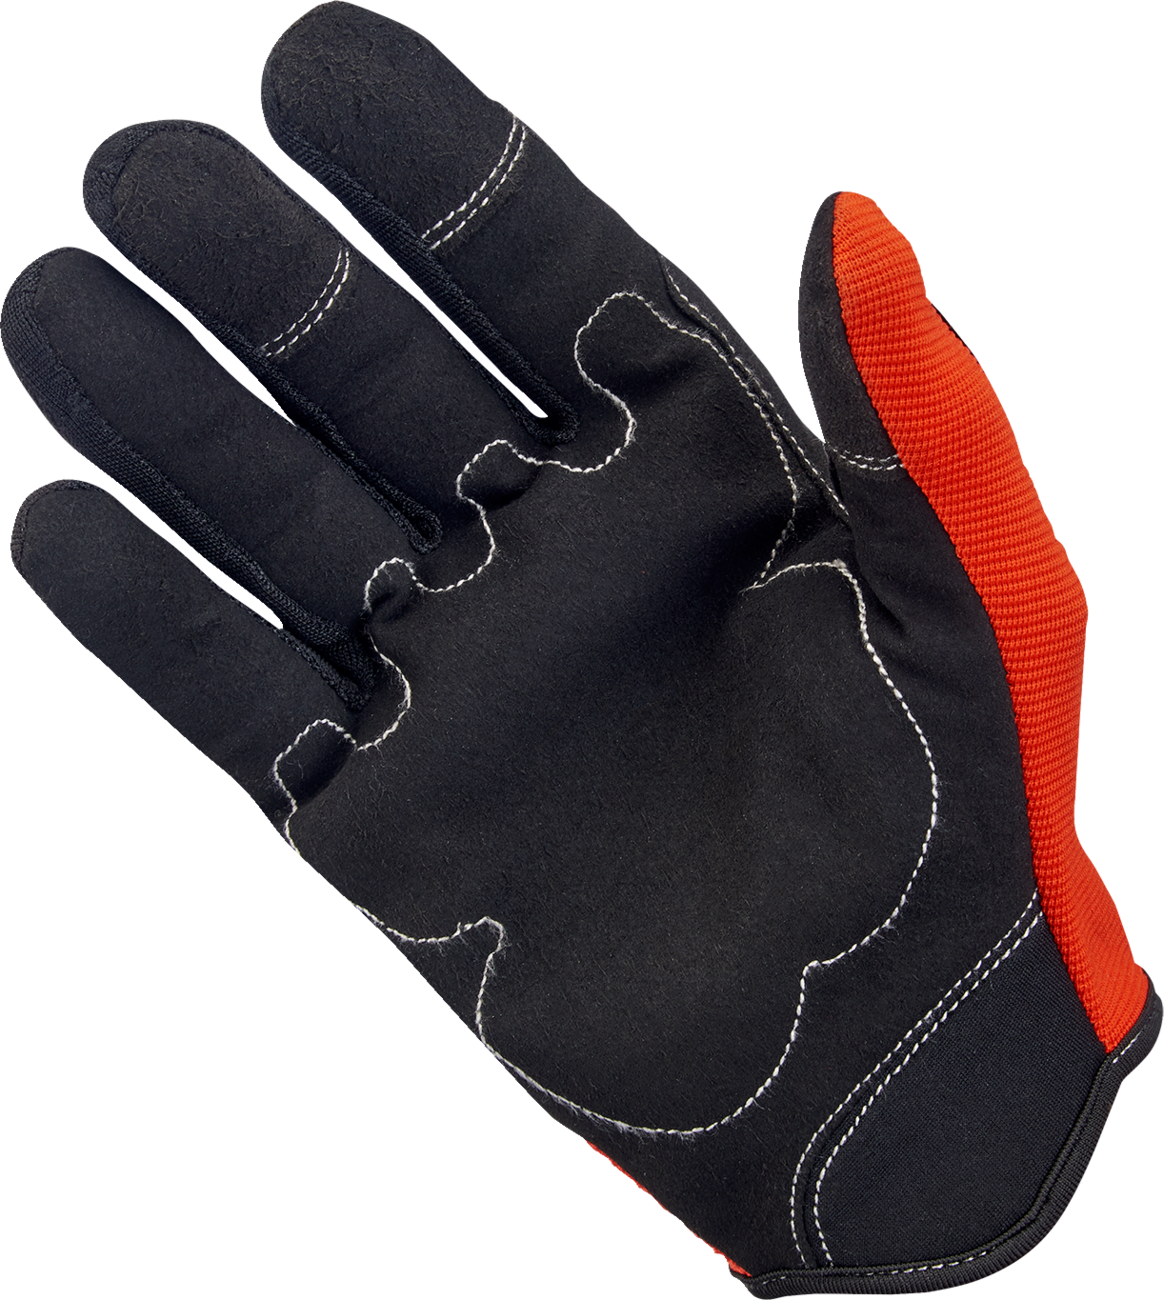 BILTWELL Moto Gloves - Orange/Black - 2XL 1501-0106-006